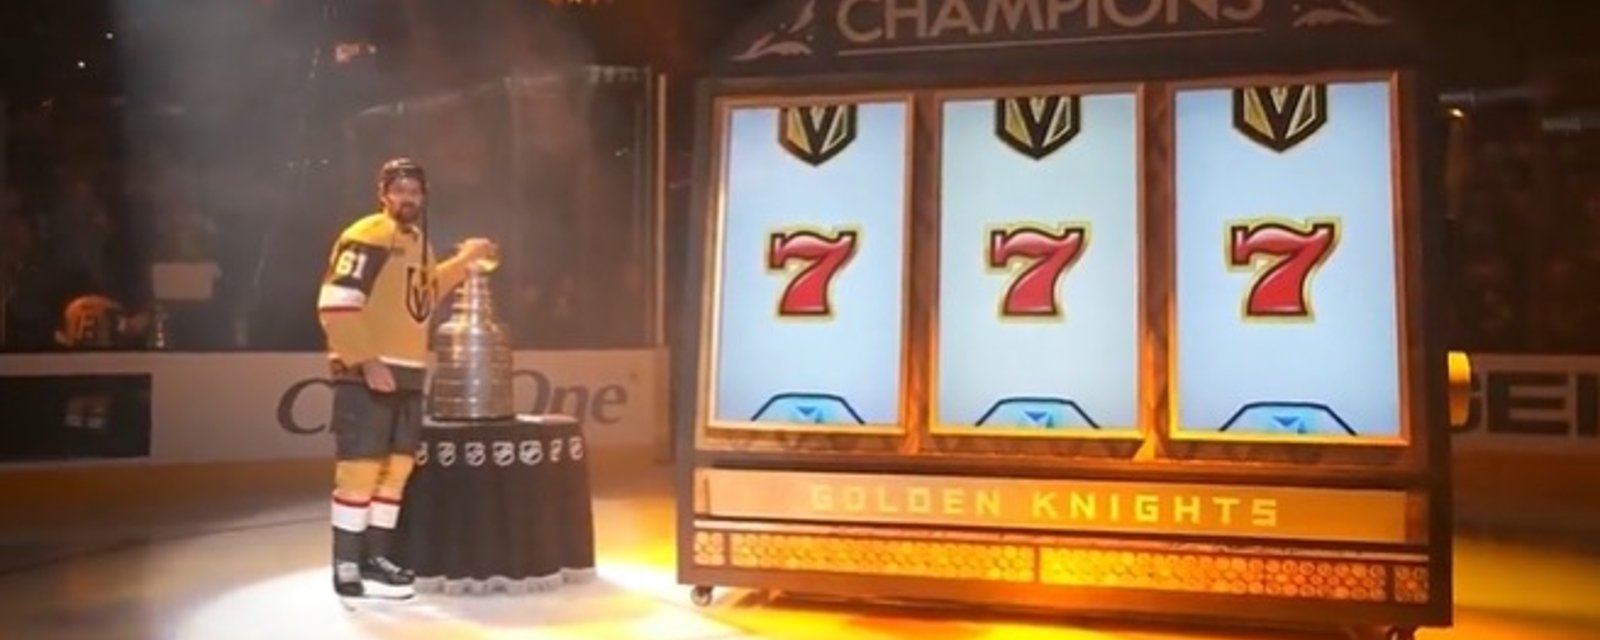 Les Golden Knights ont hissé leur première bannière de la Coupe Stanley